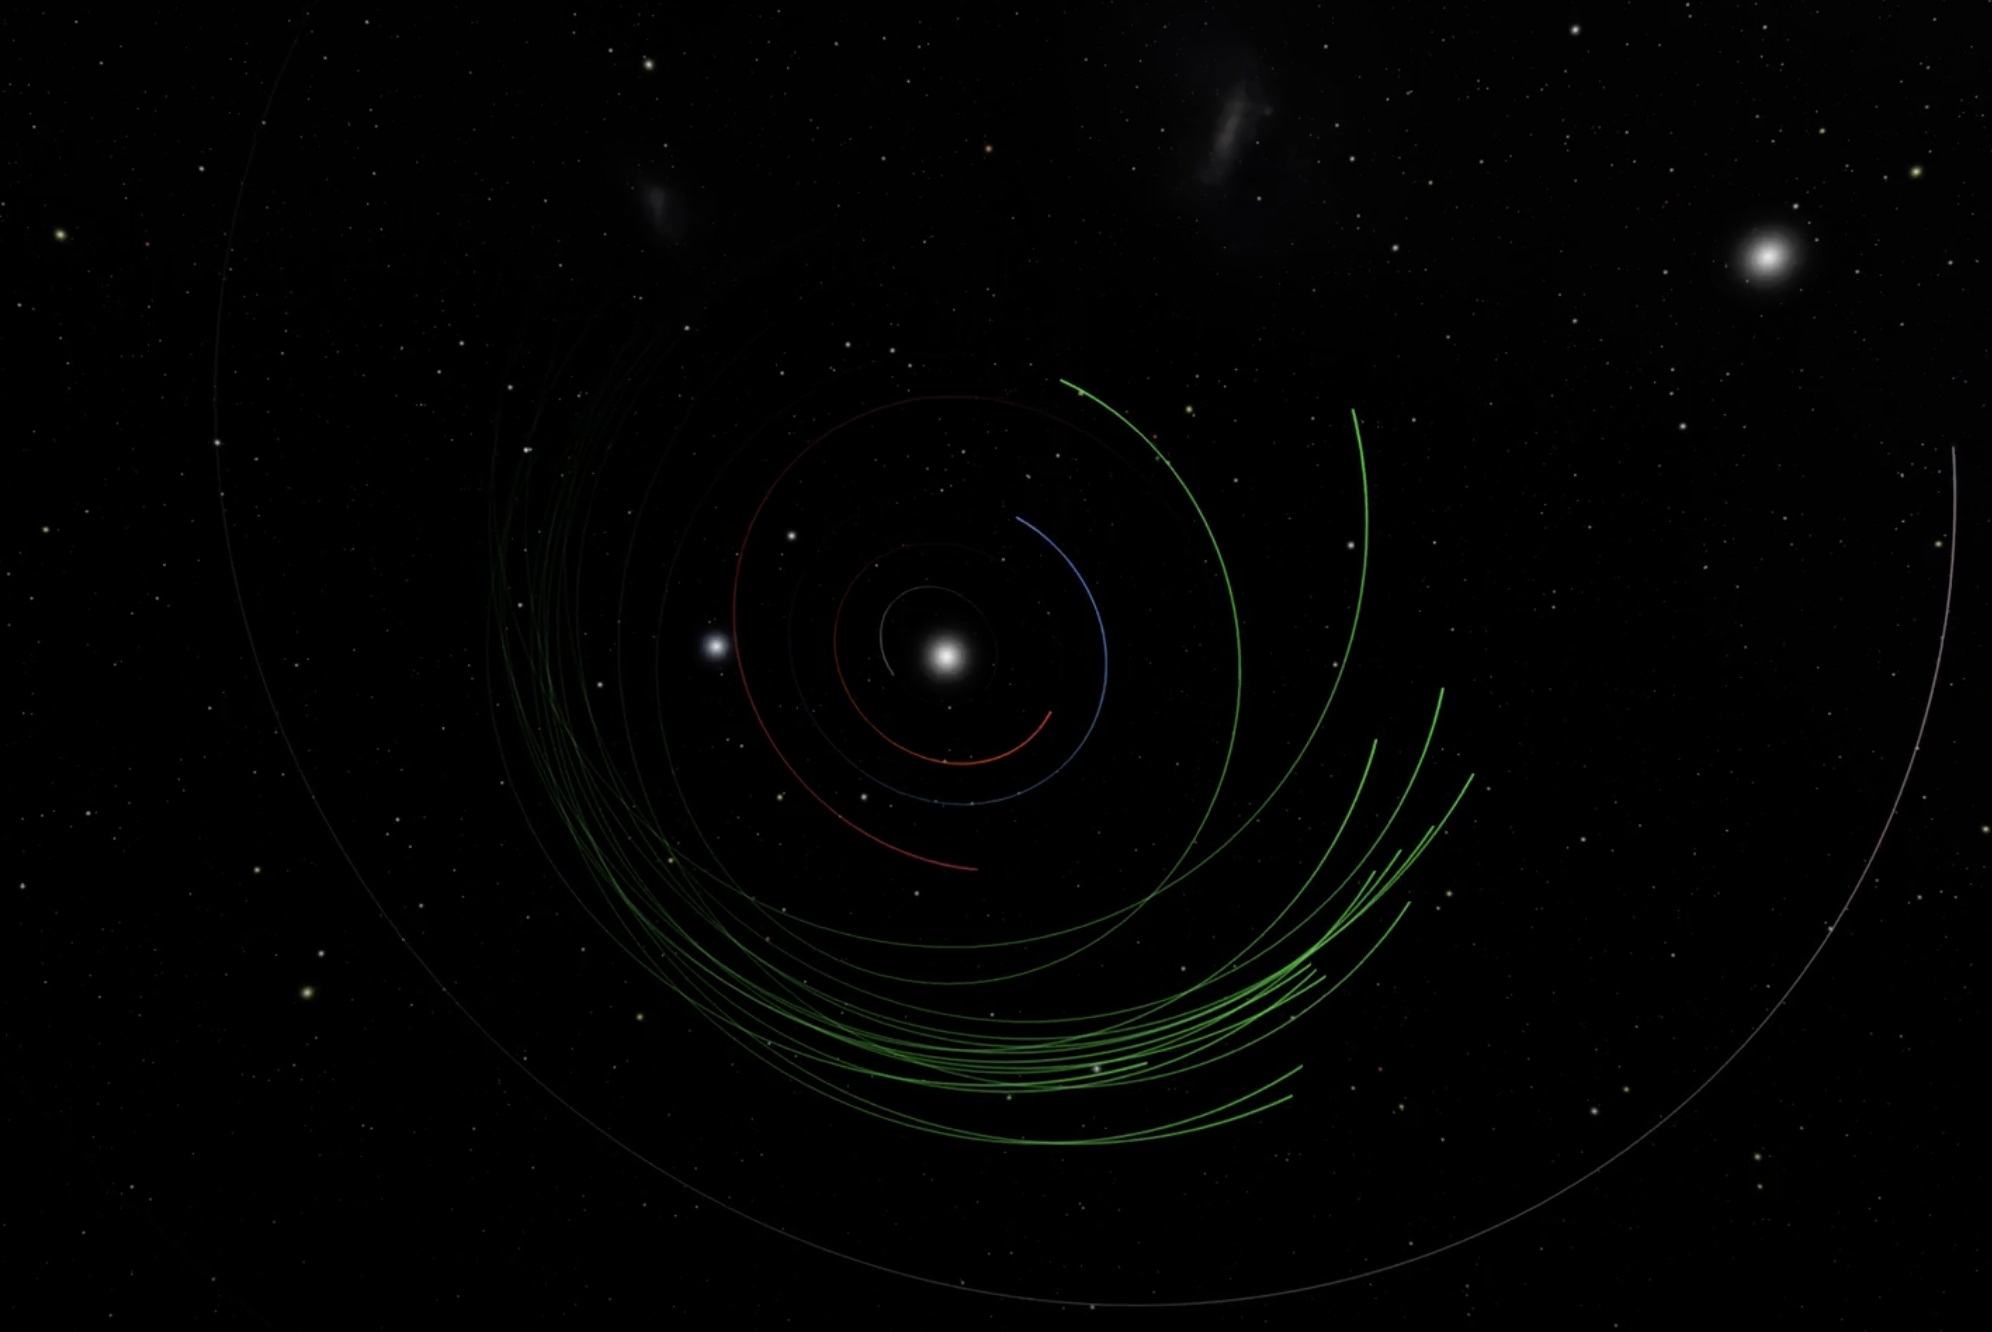 A digital rendering of asteroids in orbit in space.